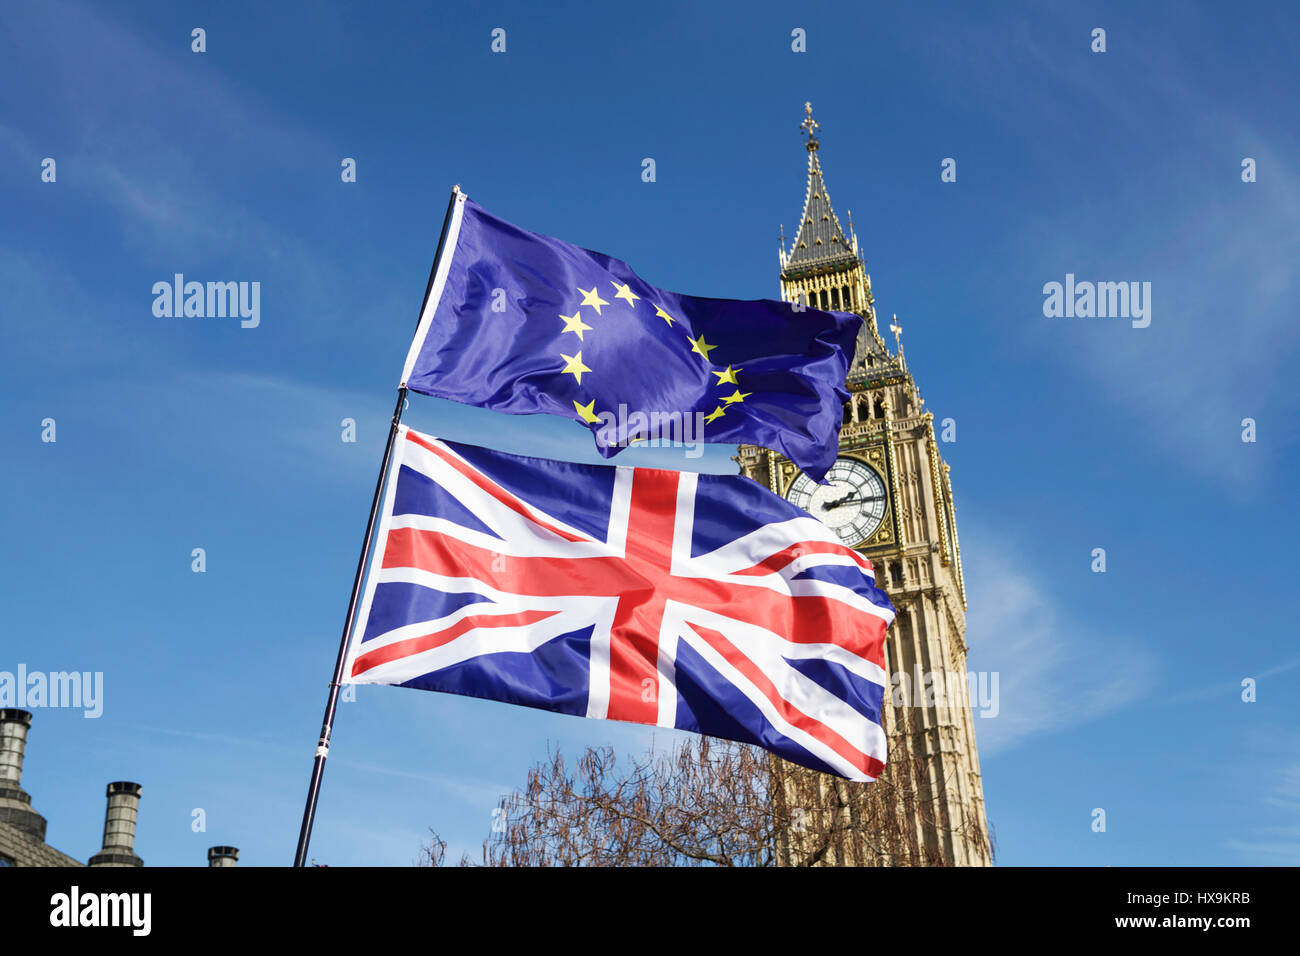 Londres, Royaume-Uni. 25 mars 2017. Unite for Europe a organisé une marche en faveur de l'UE à Londres. Les manifestants anti-BREXIT marchaient de Park Lane à la place du Parlement. Drapeau DU BREXIT, drapeaux, drapeau de l'Union Jack, drapeau de l'UE, drapeau européen, Big Ben. Drapeaux du Parlement. Politique Royaume-Uni. Concept du Brexit. La démocratie britannique. Vote Brexit. accord du Parlement britannique sur le brexit. Négociations commerciales. Banque D'Images